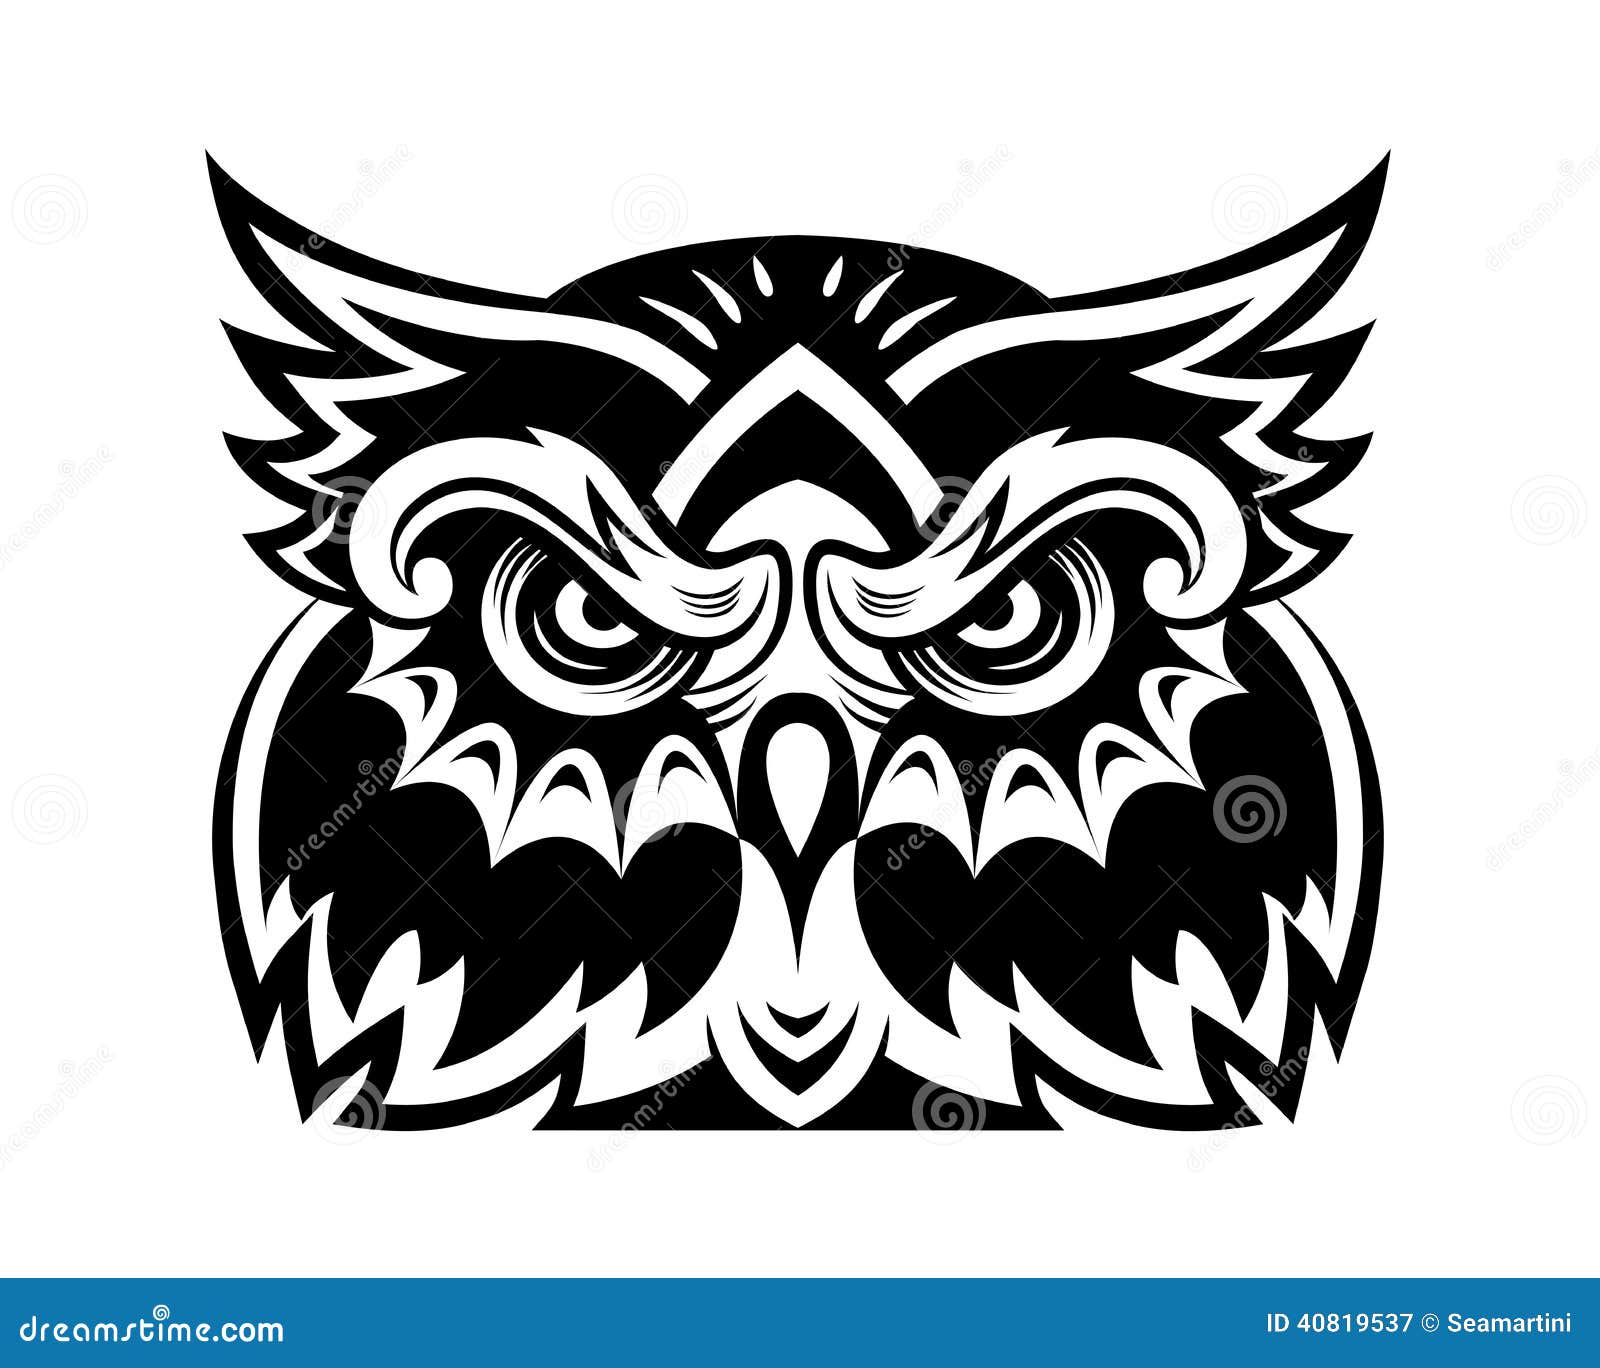 owl mascot clipart - photo #8